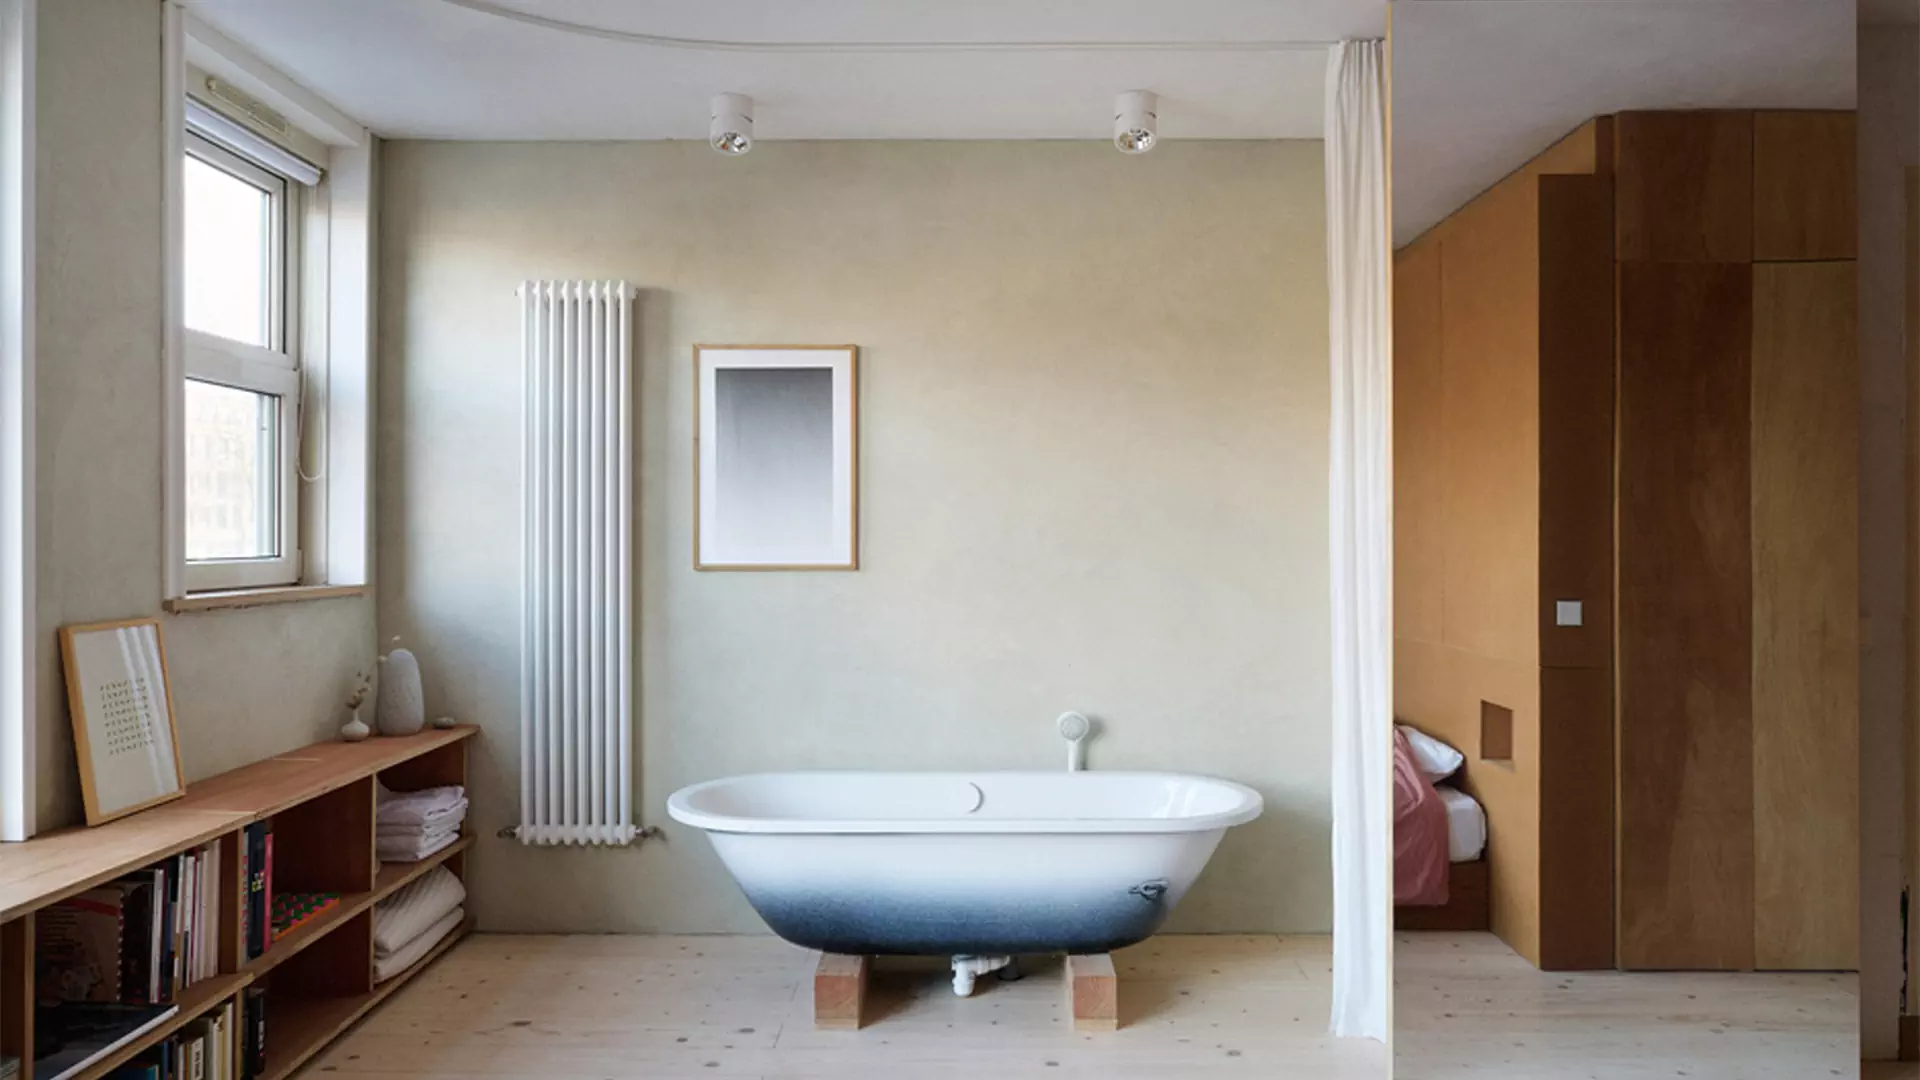 Ванна в спальне и другие оригинальные решения в интерьере нидерландской квартиры — проект Улли Хекманн и Нинке Бонгерс